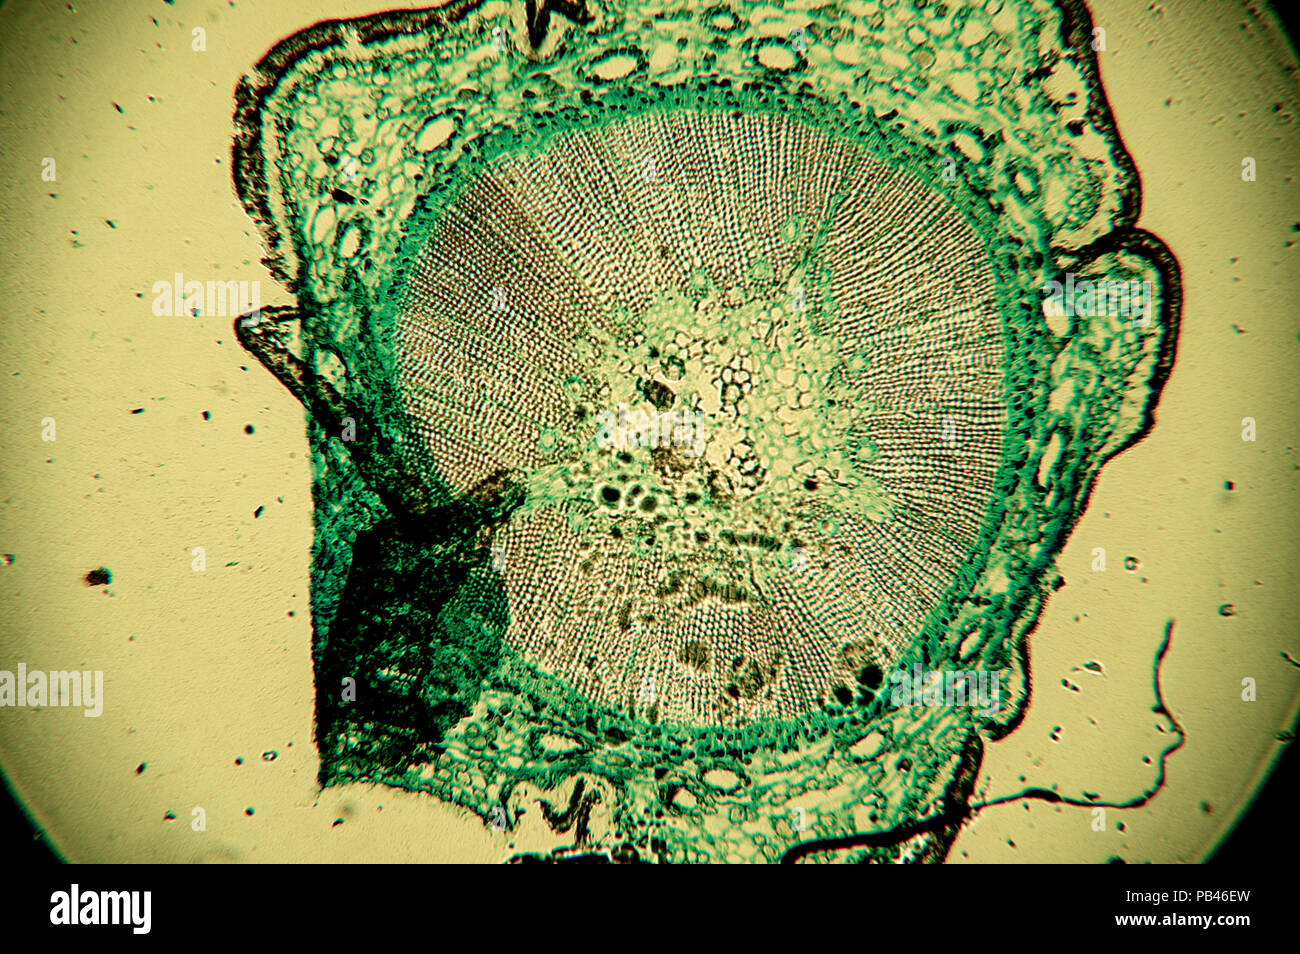 Célula de un organismo vivo en el microscopio. Foto de stock